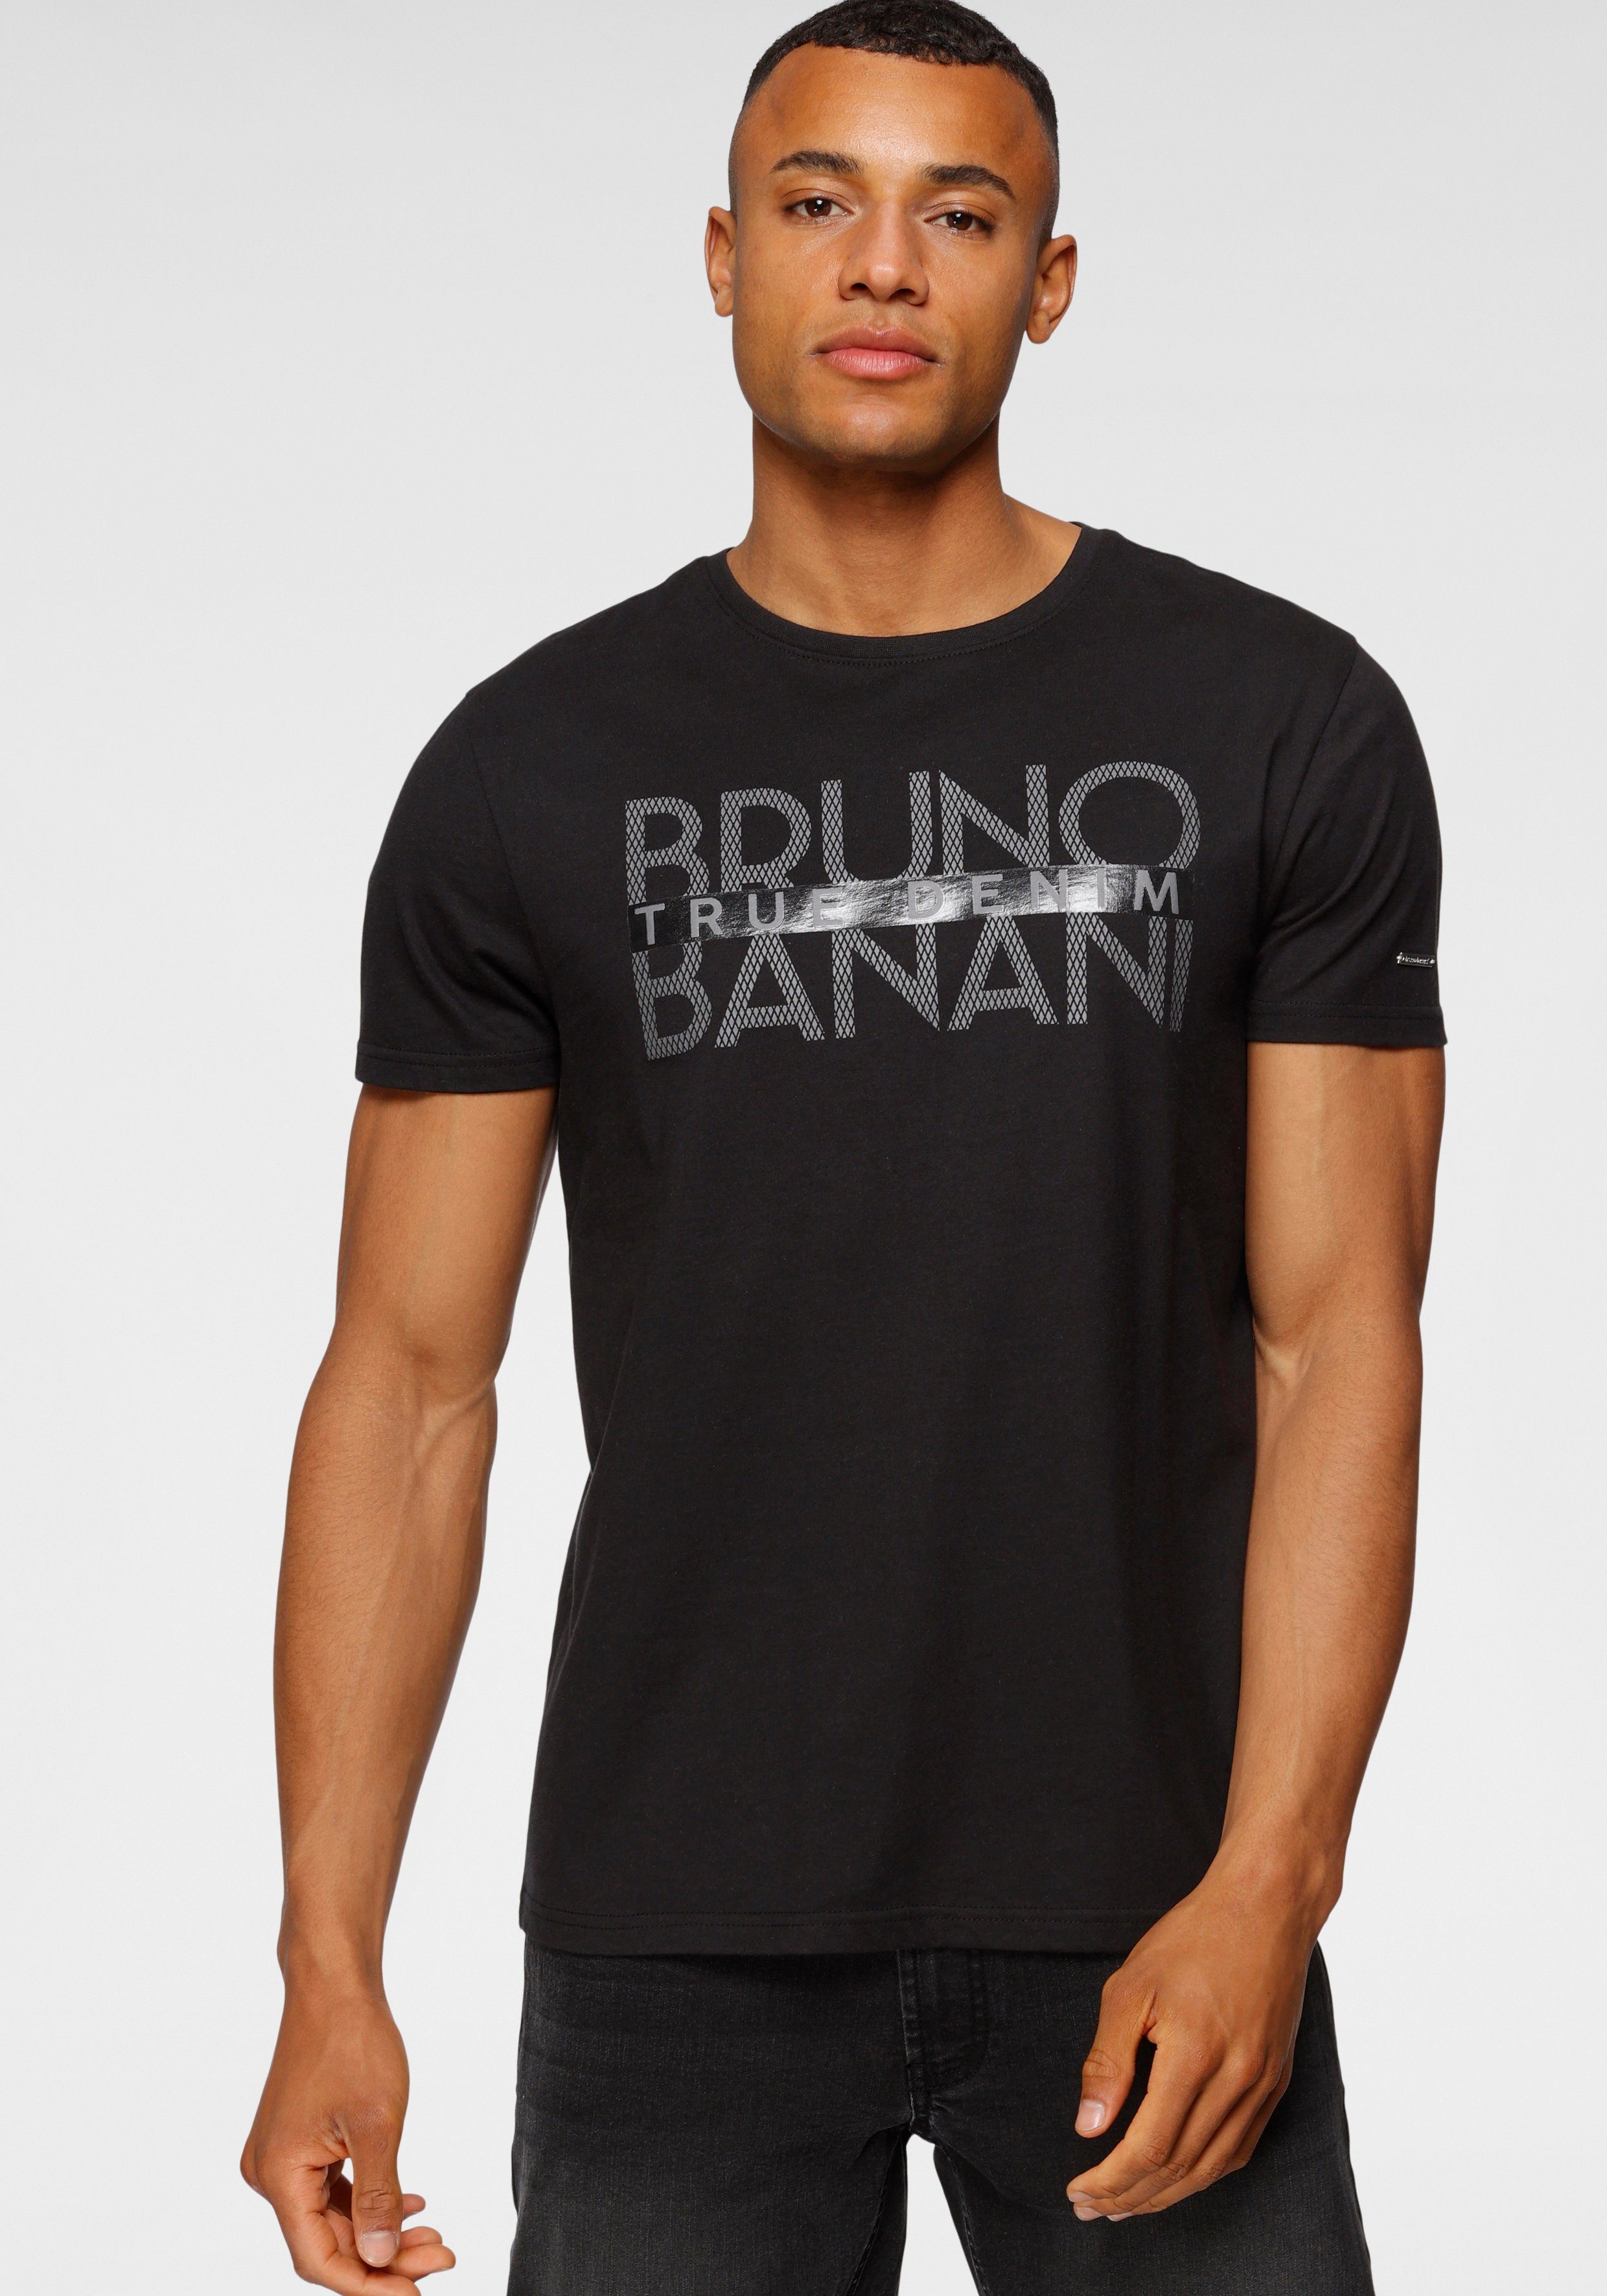 Bruno Banani T-Shirt Print schwarz mit glänzendem